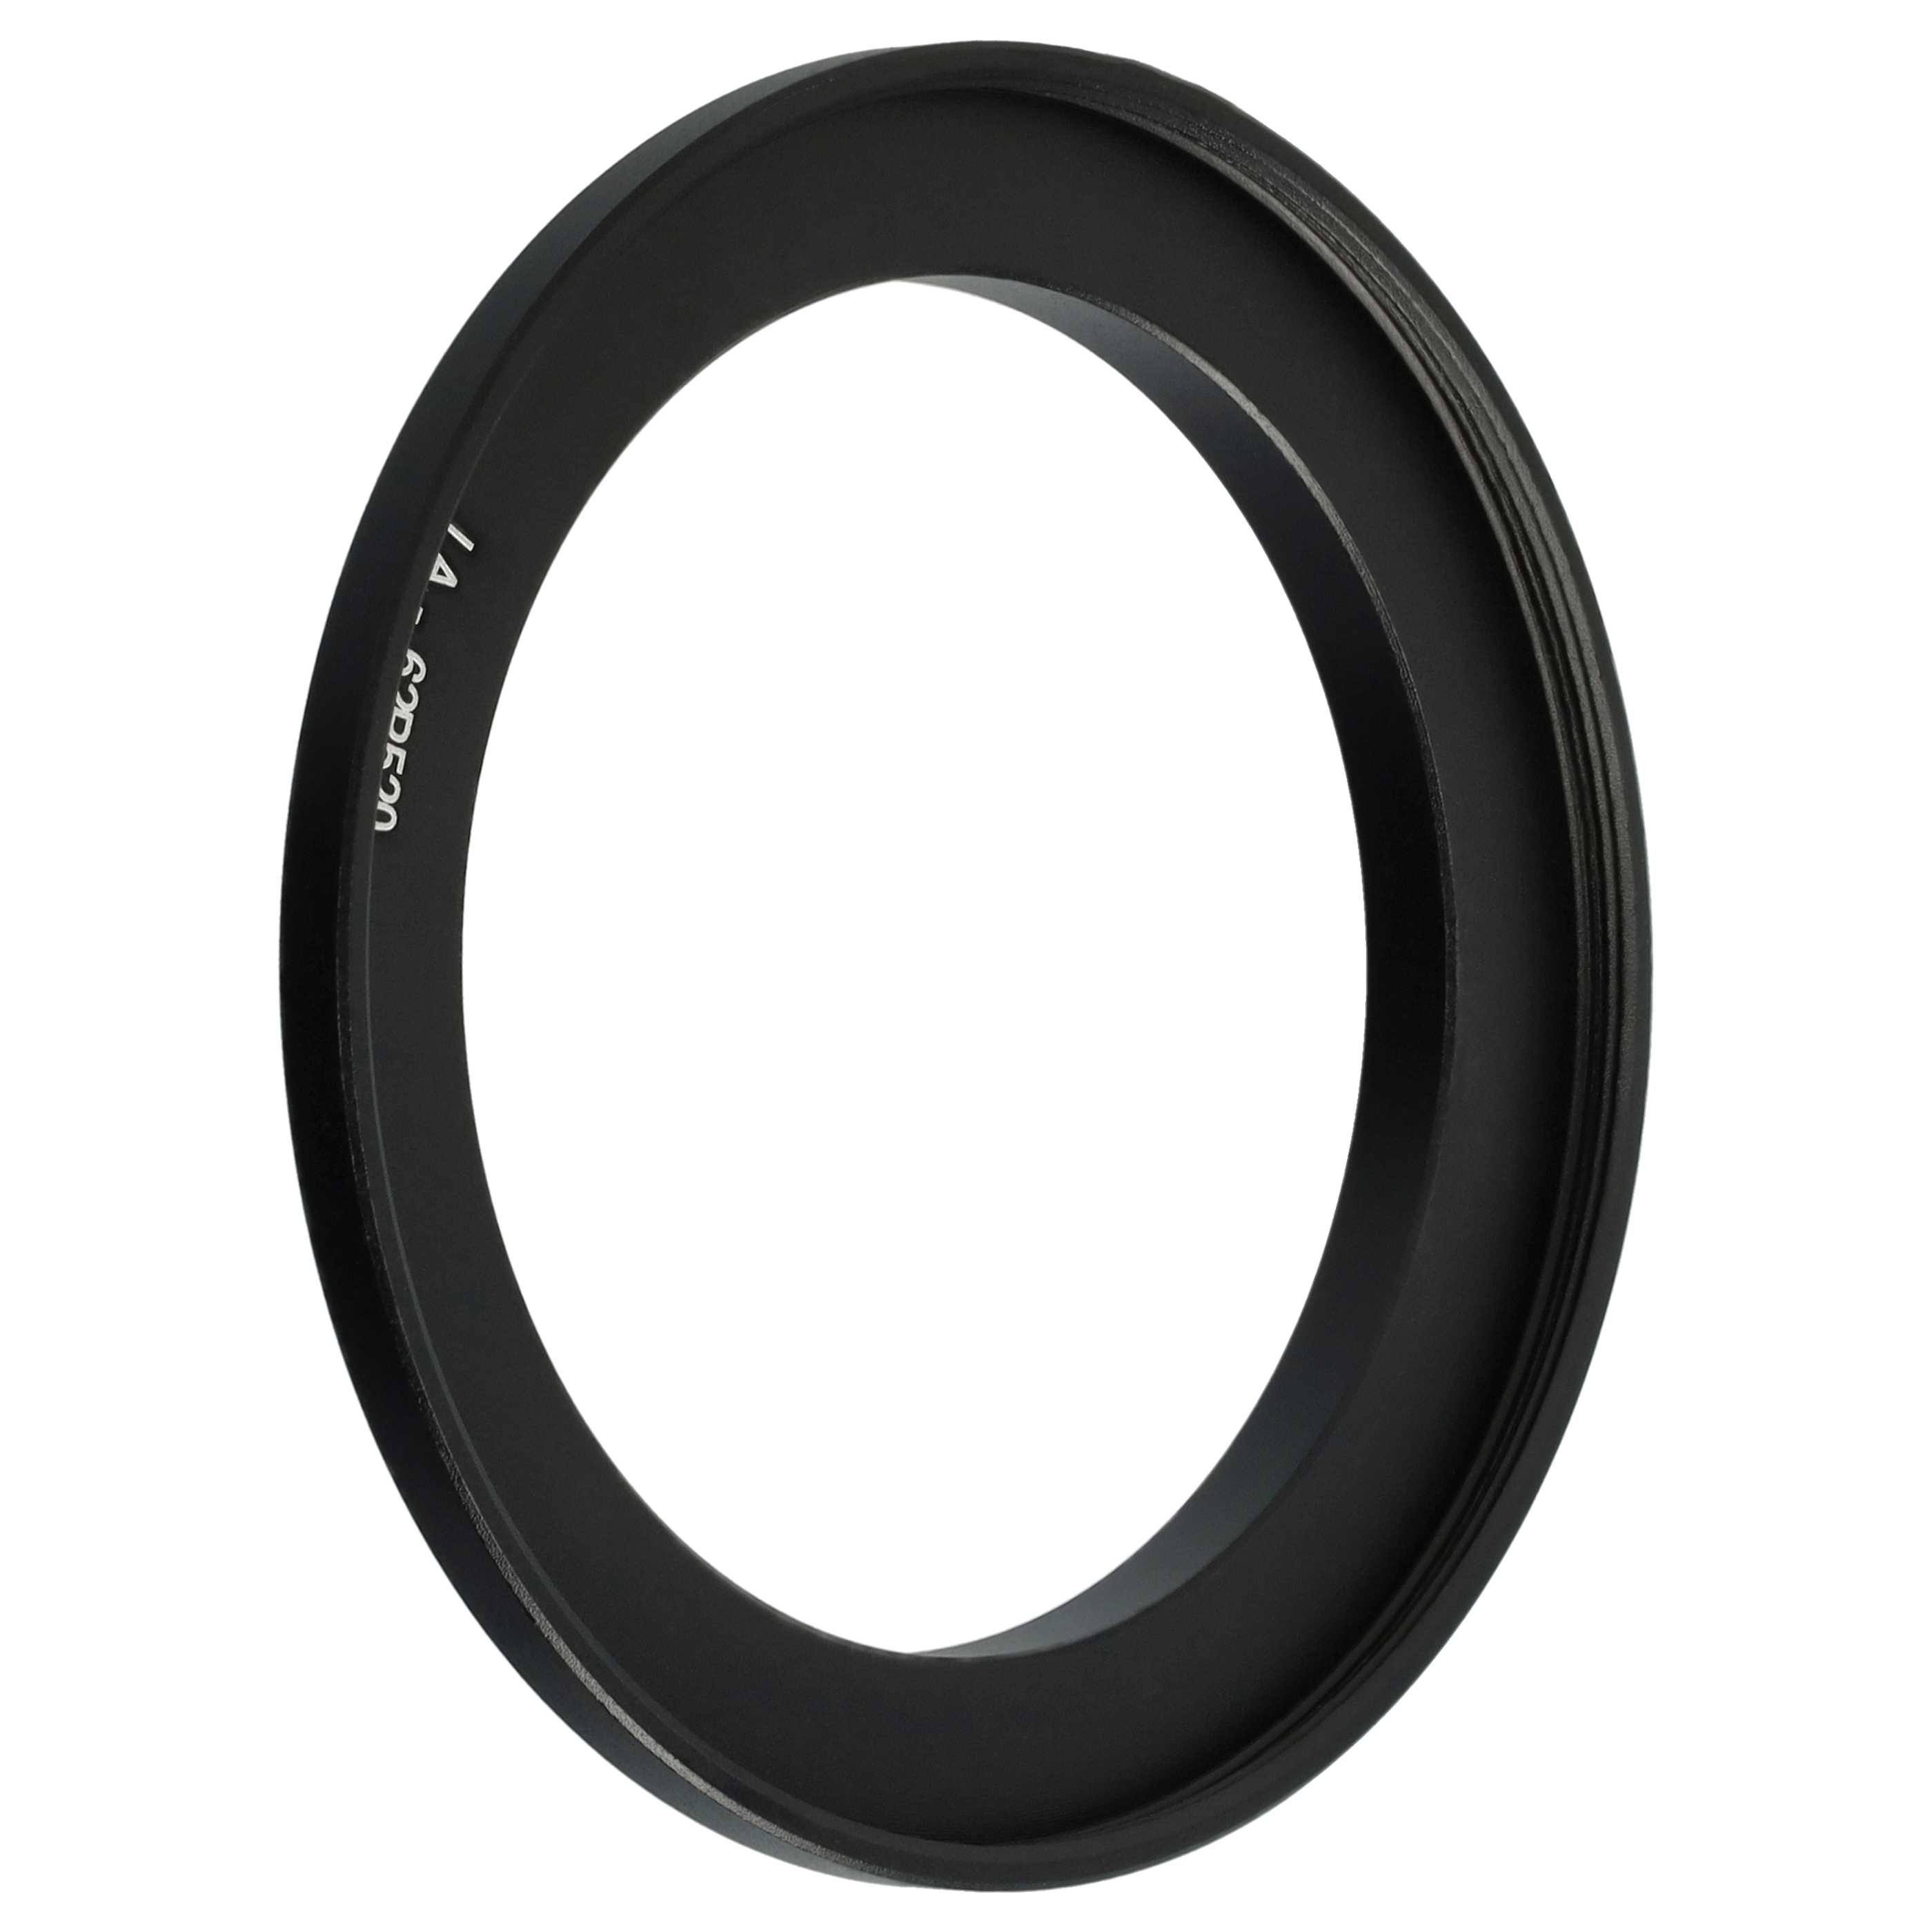 Adattatore filtro 62 mm sostituisce Nikon LA-62P520 per obbiettivo fotocamera